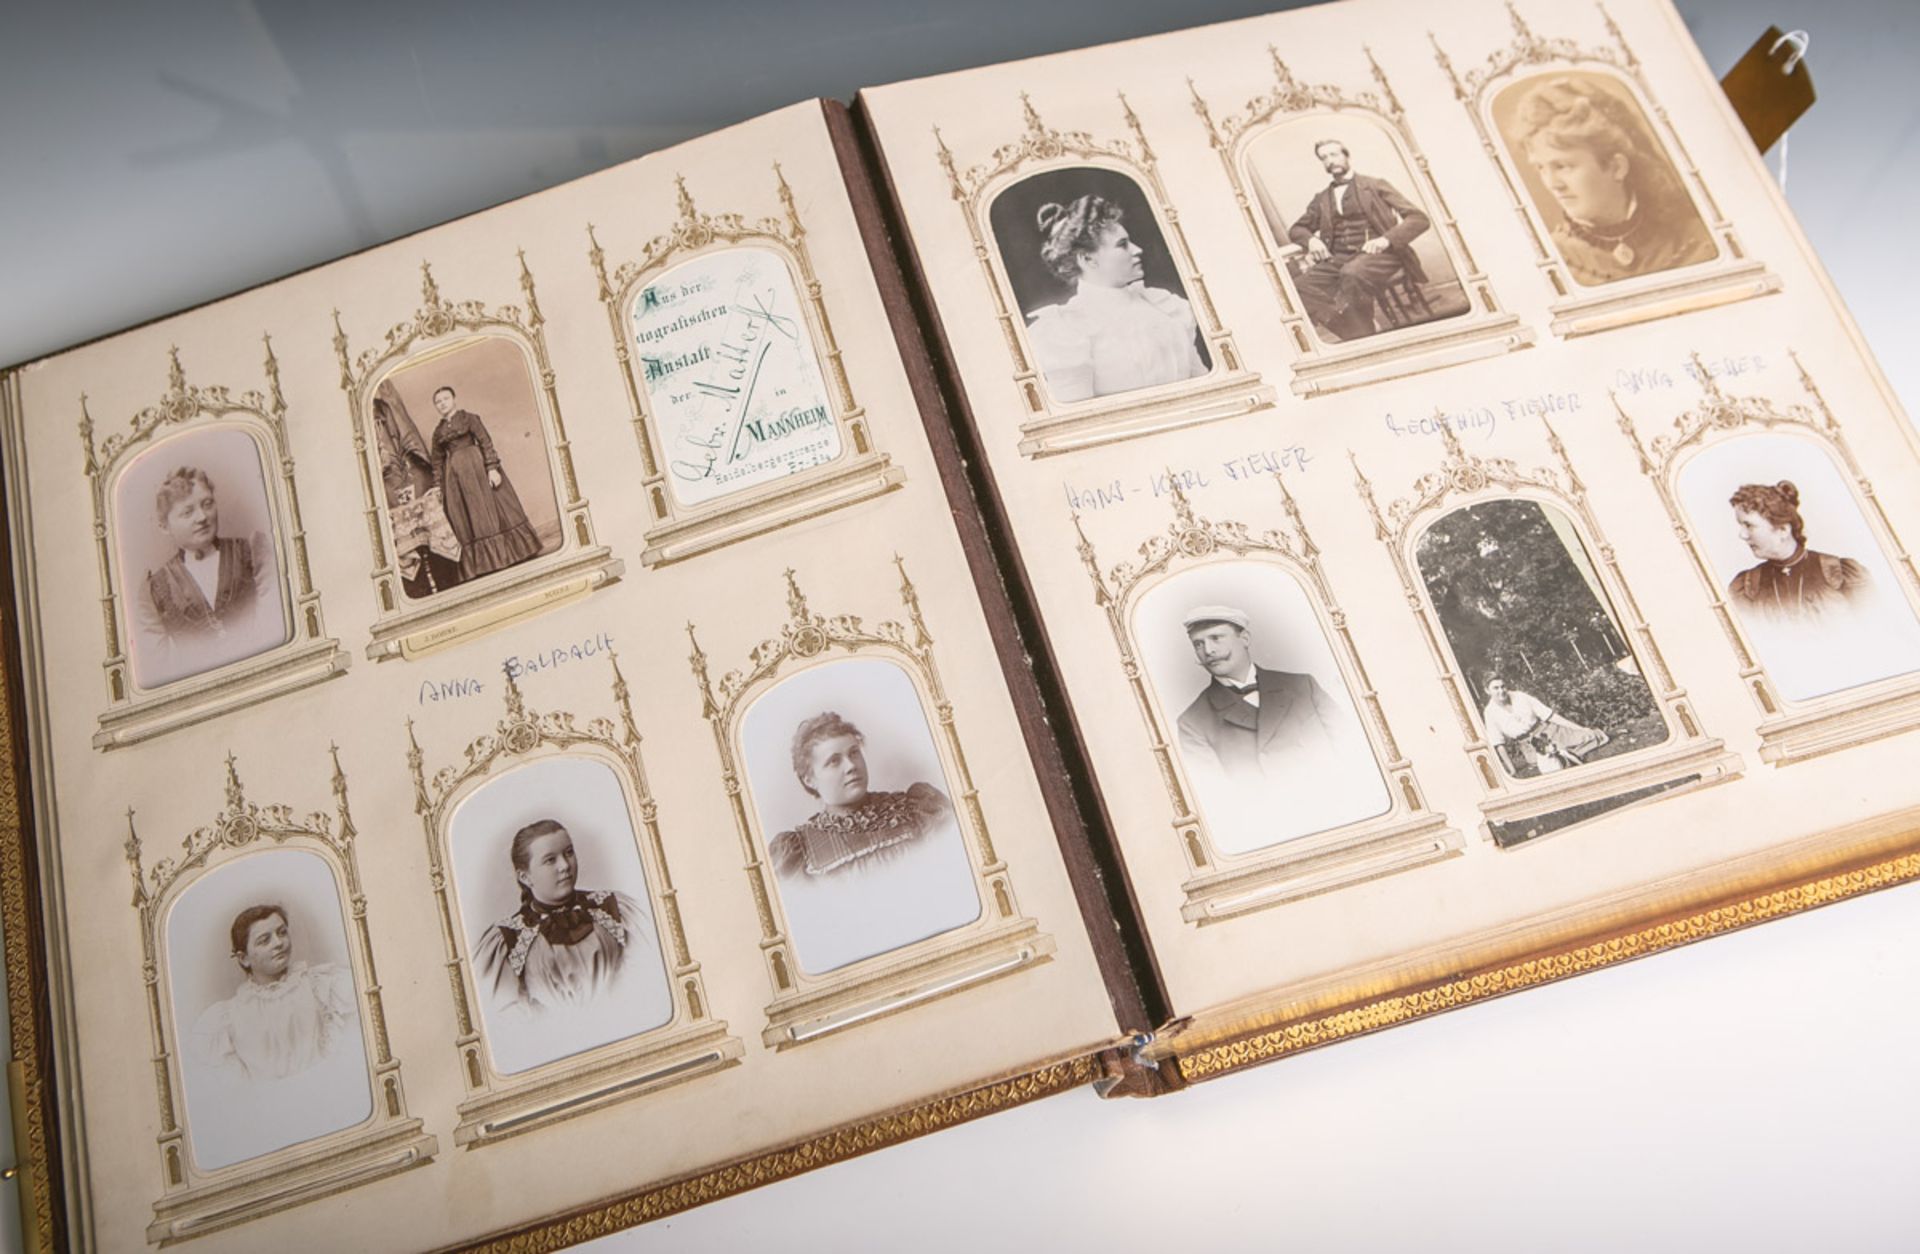 Aufwendig gestaltetes Privatfotoalbum (2. Hälfte 19. Jahrhundert), 117 Fotos der Familie - Image 2 of 2